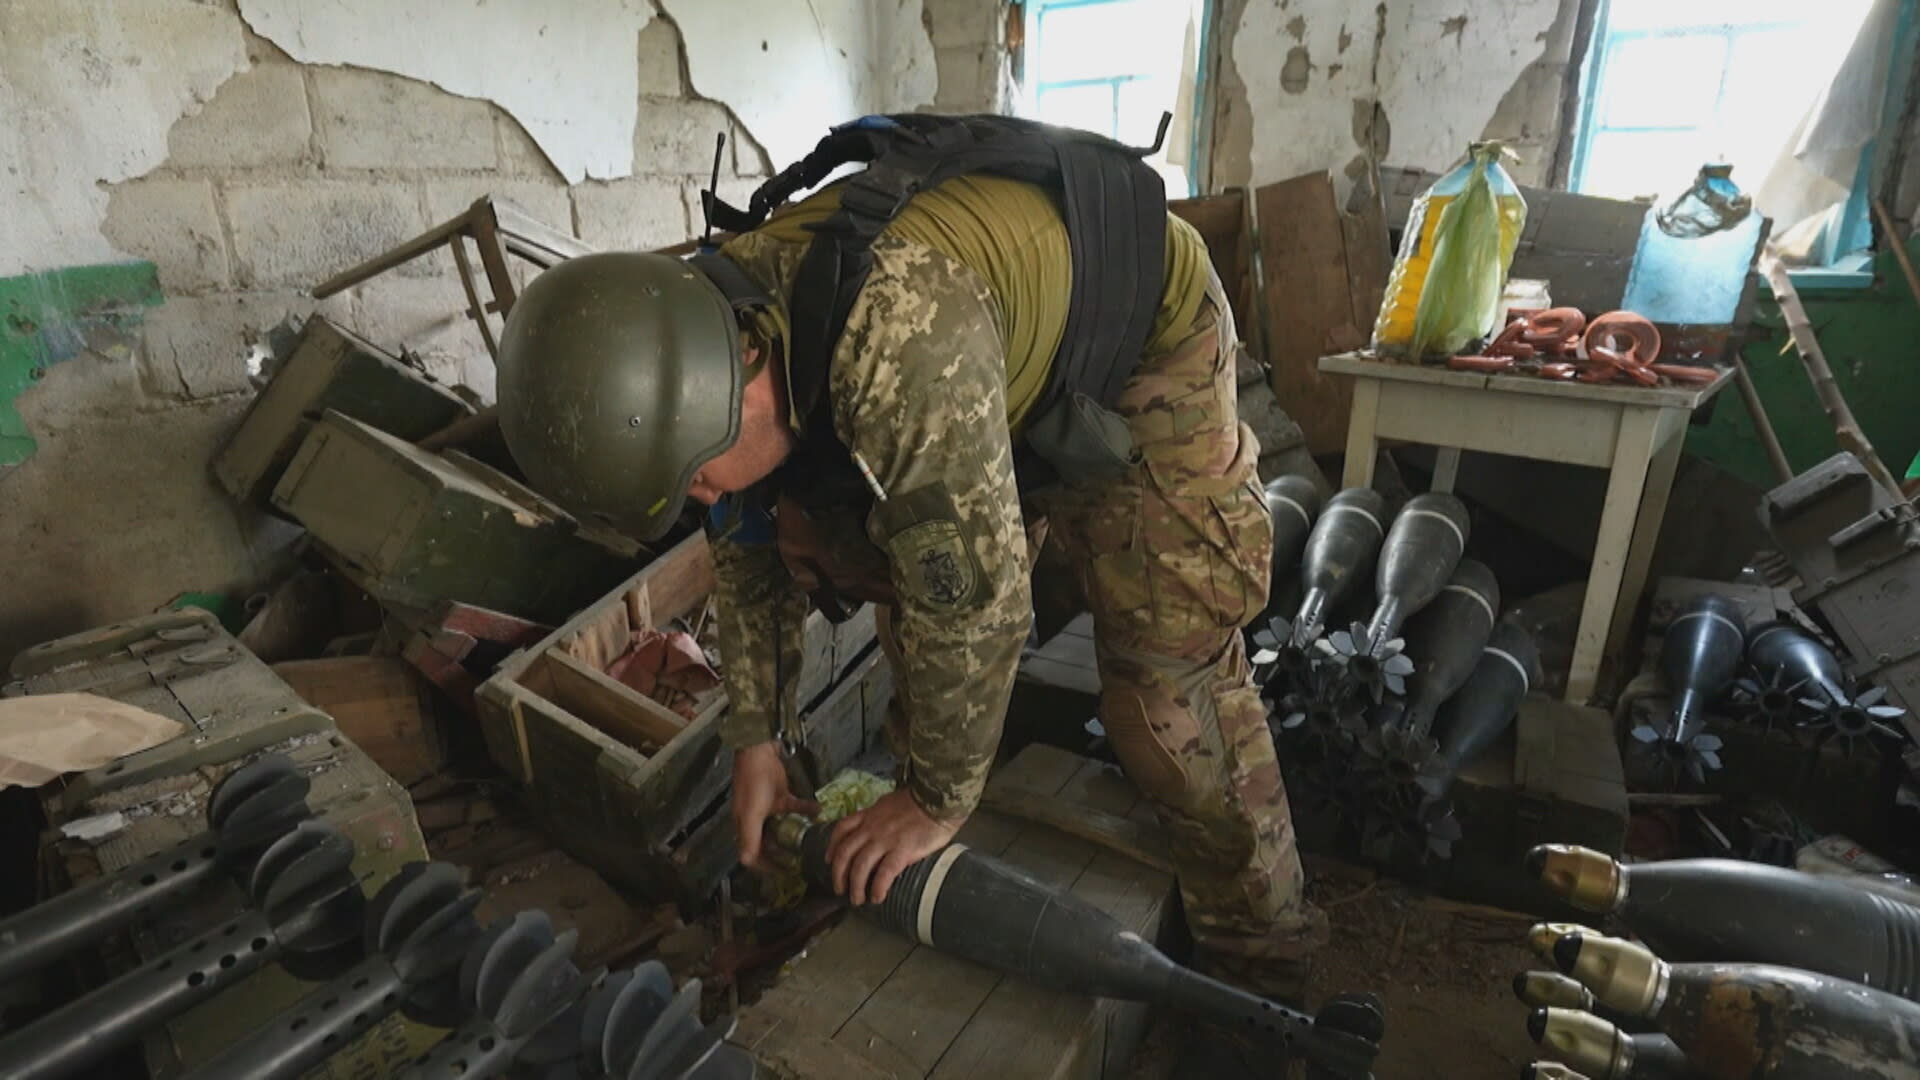 Ukrajinská minometná posádka se nastěhovala do Rusy nedávno vyklizeného domu.